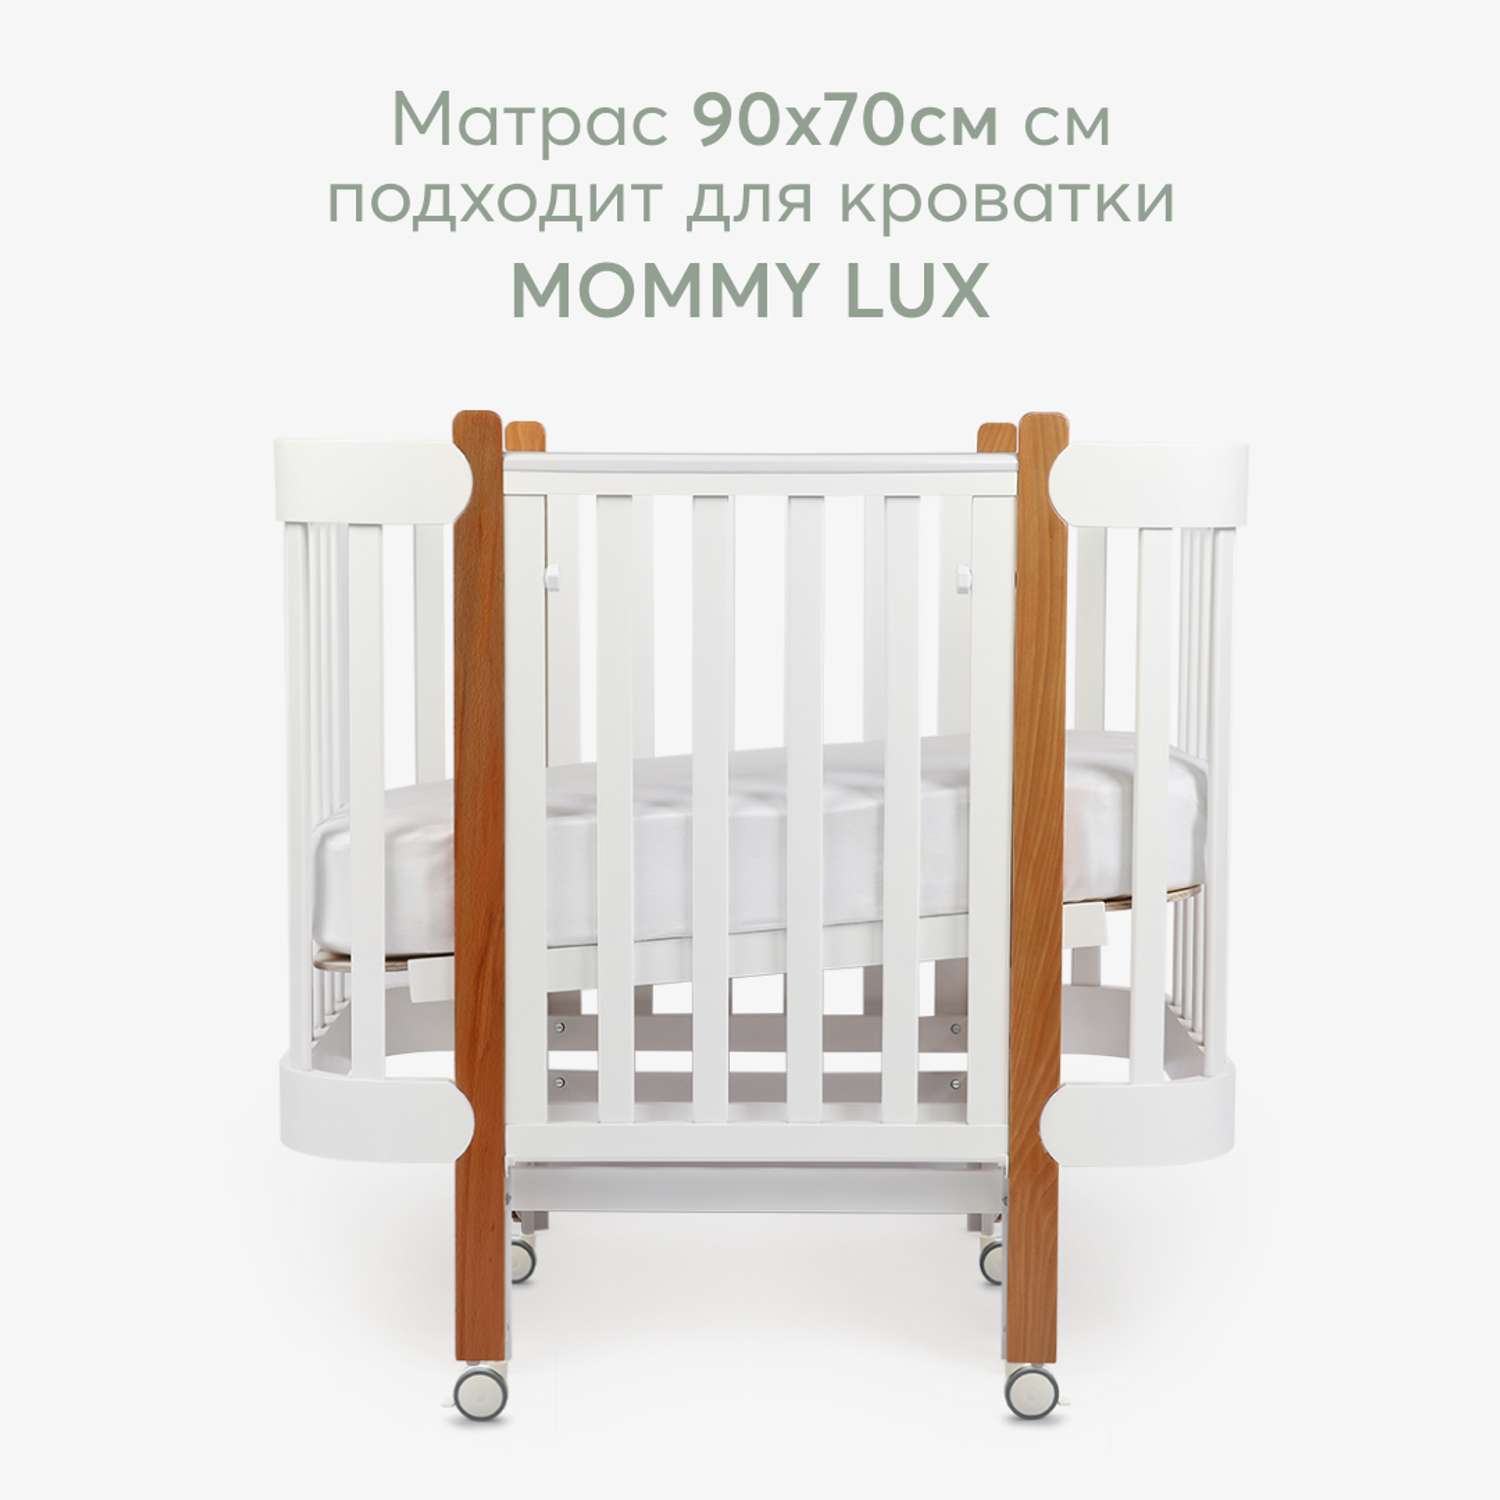 Матрас двусторонний 90х70 Happy Baby гипоаллергенный для кровати MOMMY LUX - фото 2